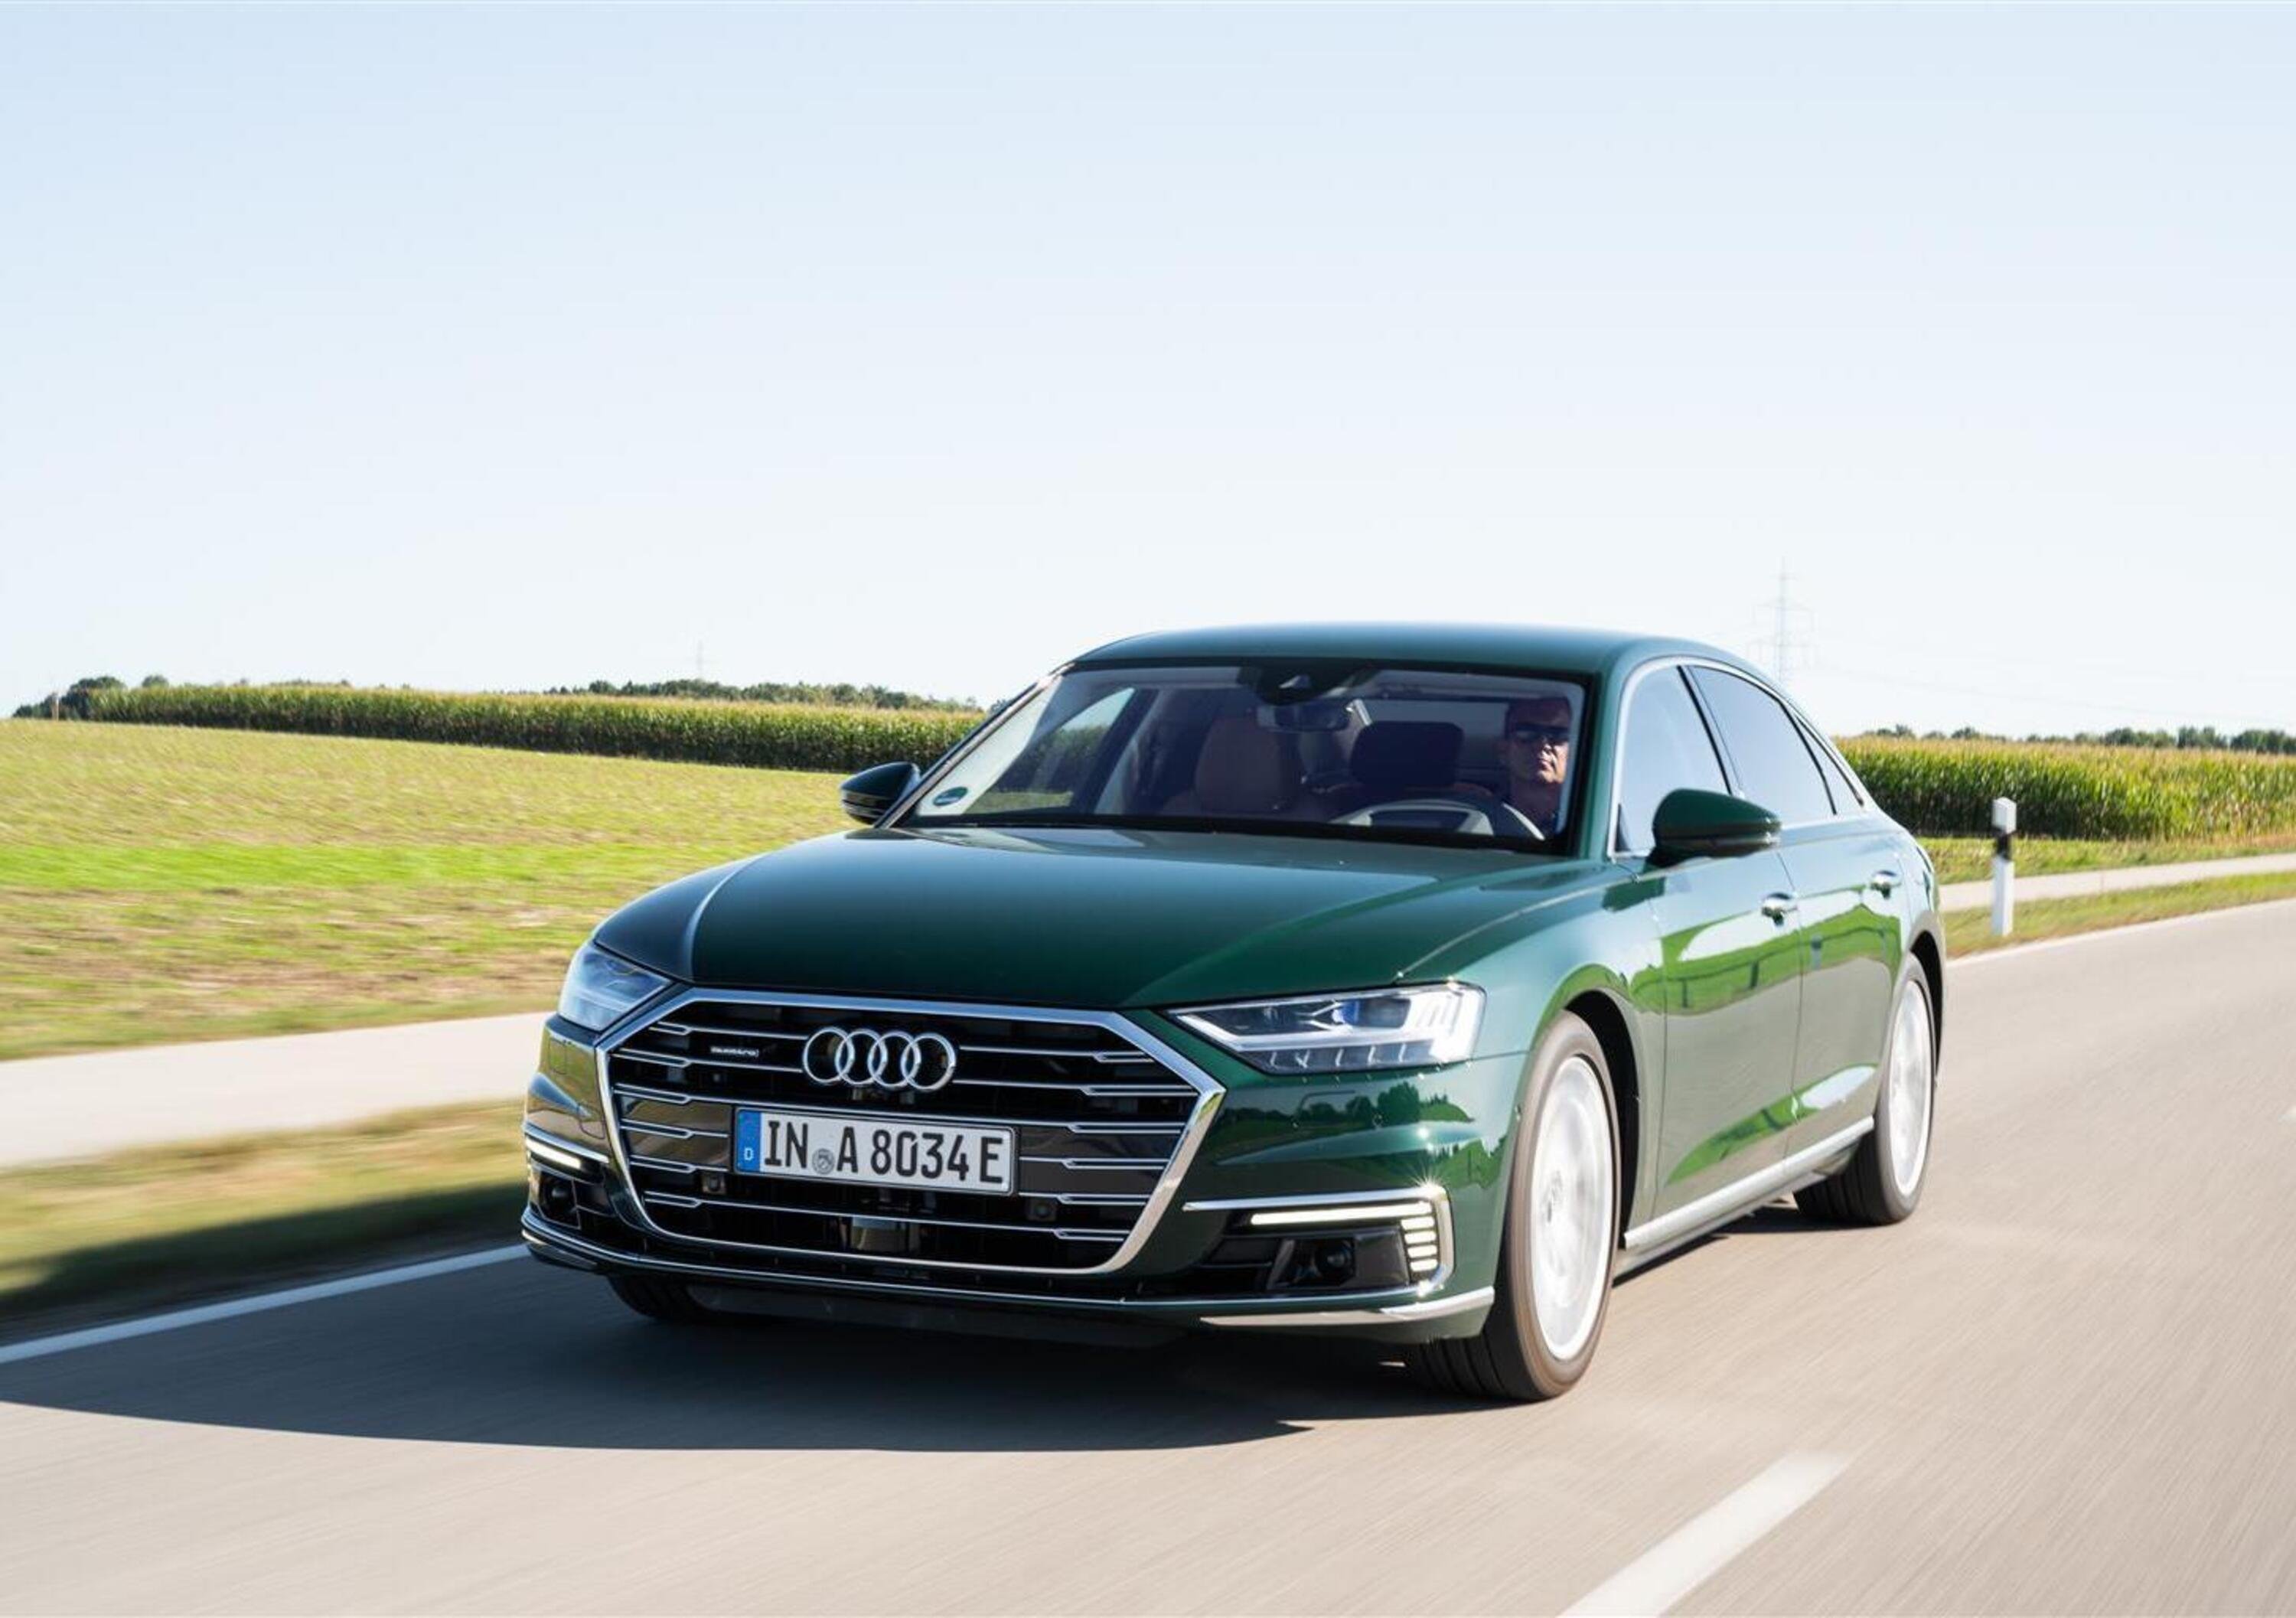 Audi rinuncia alla guida autonoma di livello 3 sulla A8